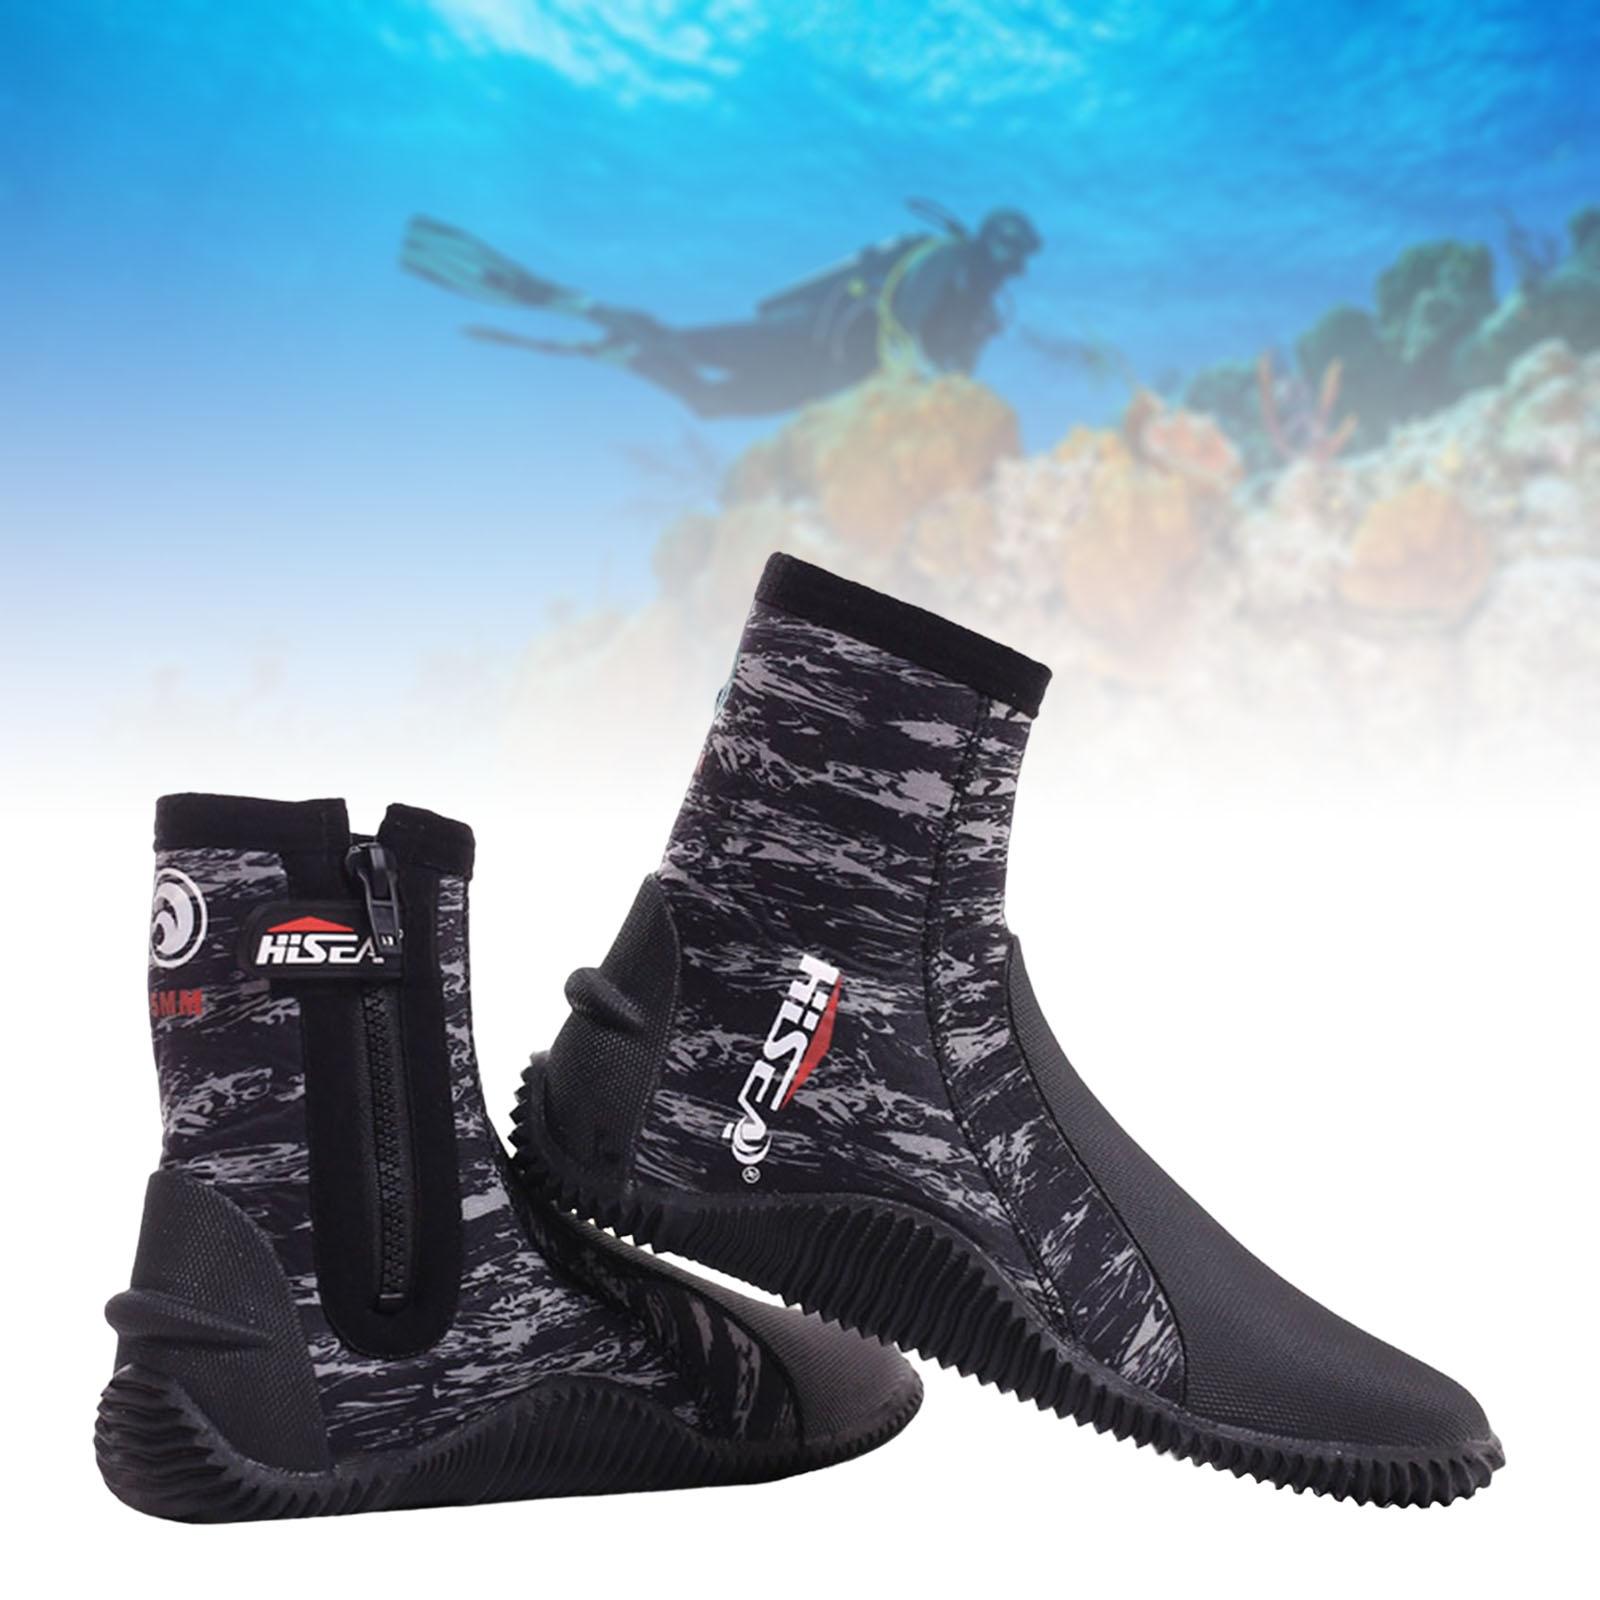 Scuba Diving Booties Neoprene Water Sports Wetsuit Boots Camo 43 25.5-26 